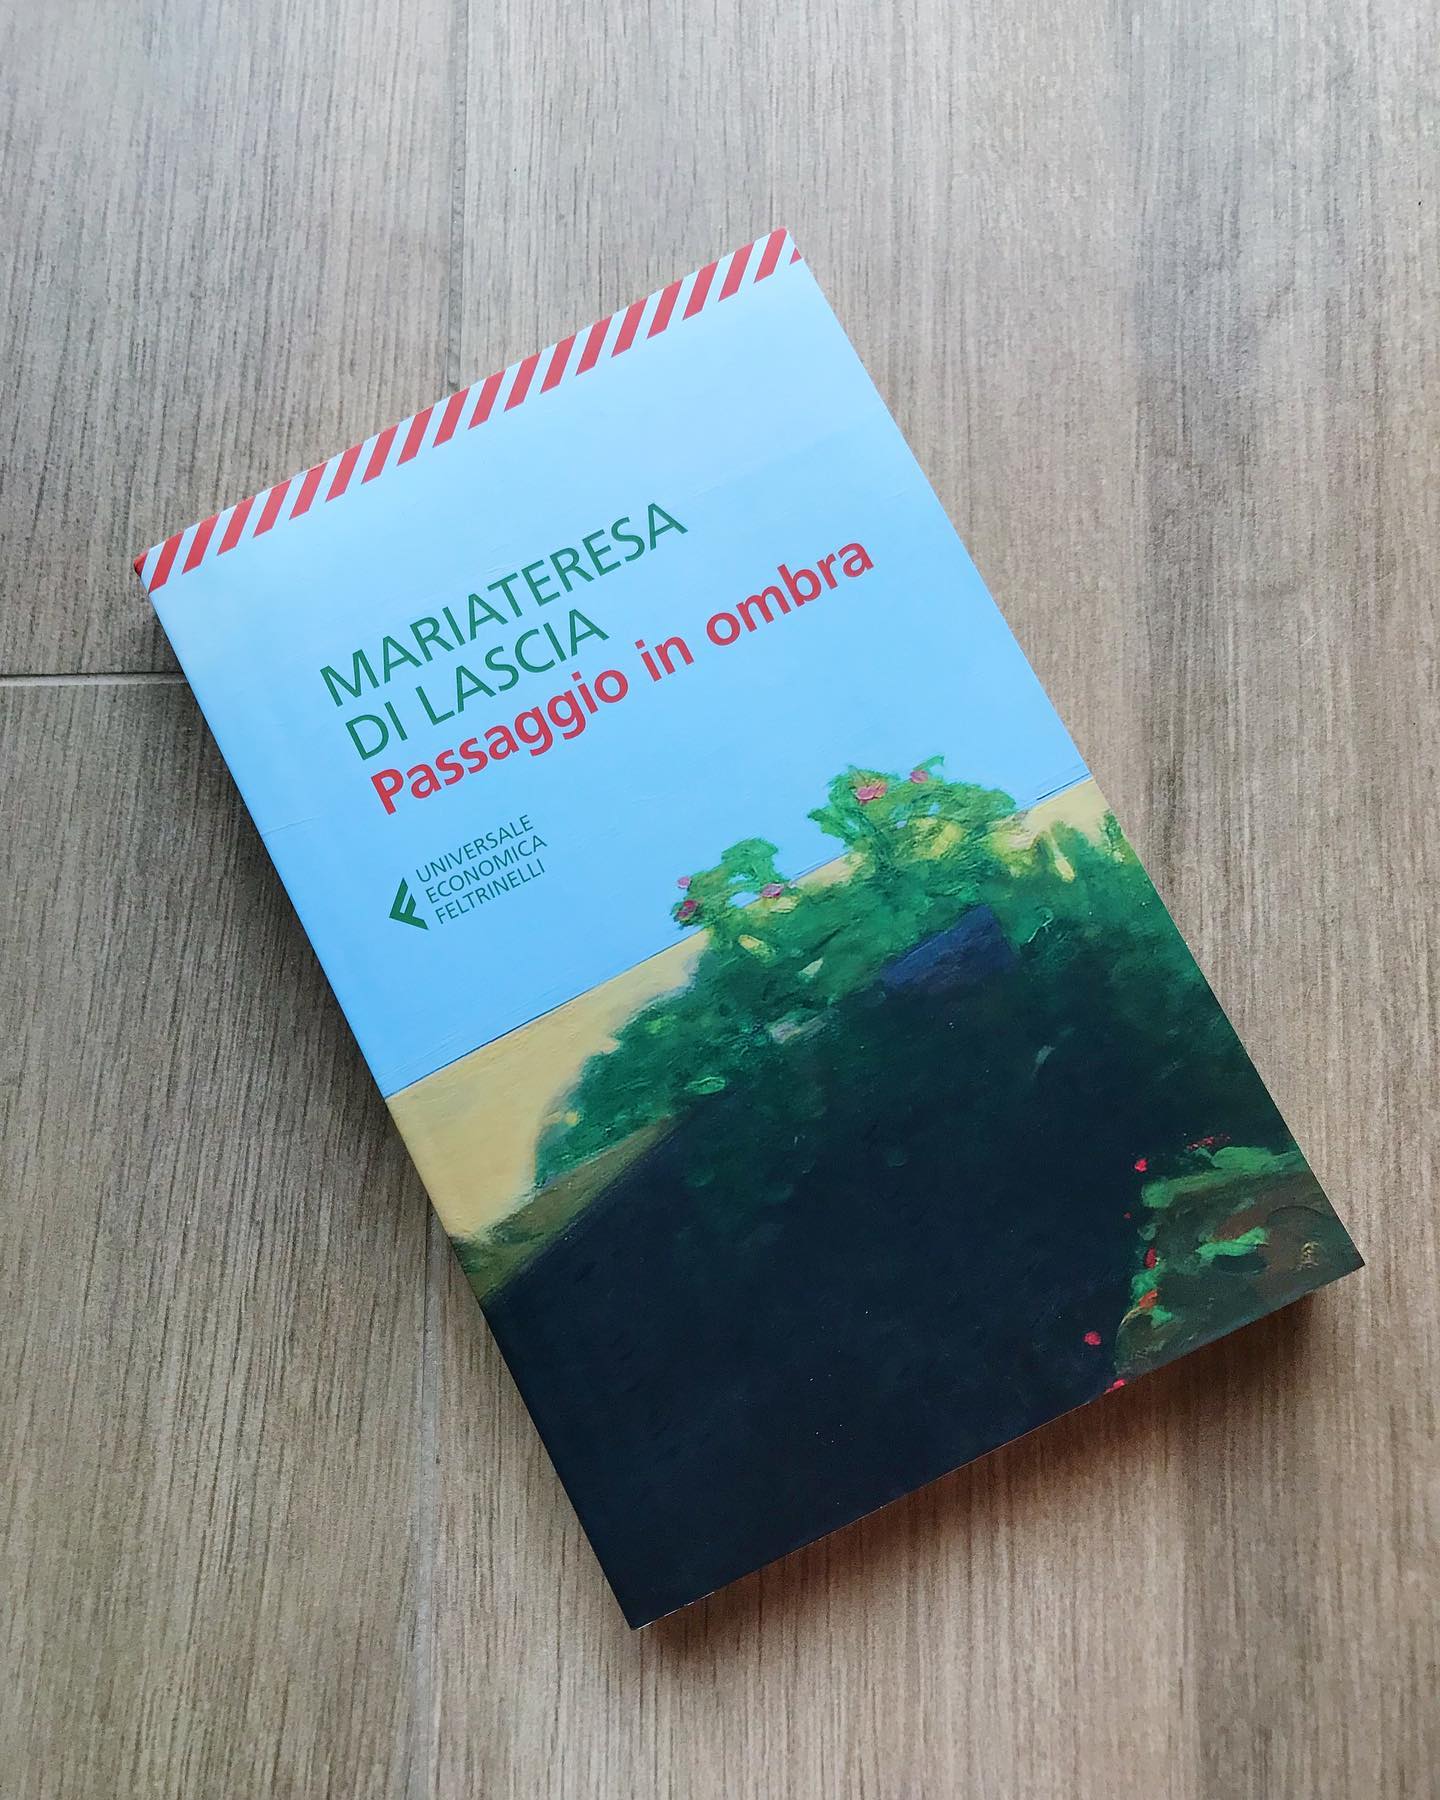 Libro Passaggio in Ombra di Mariateresa DI Lascia. In copertina un paesaggio di vegetazione su fondo blu del cielo.